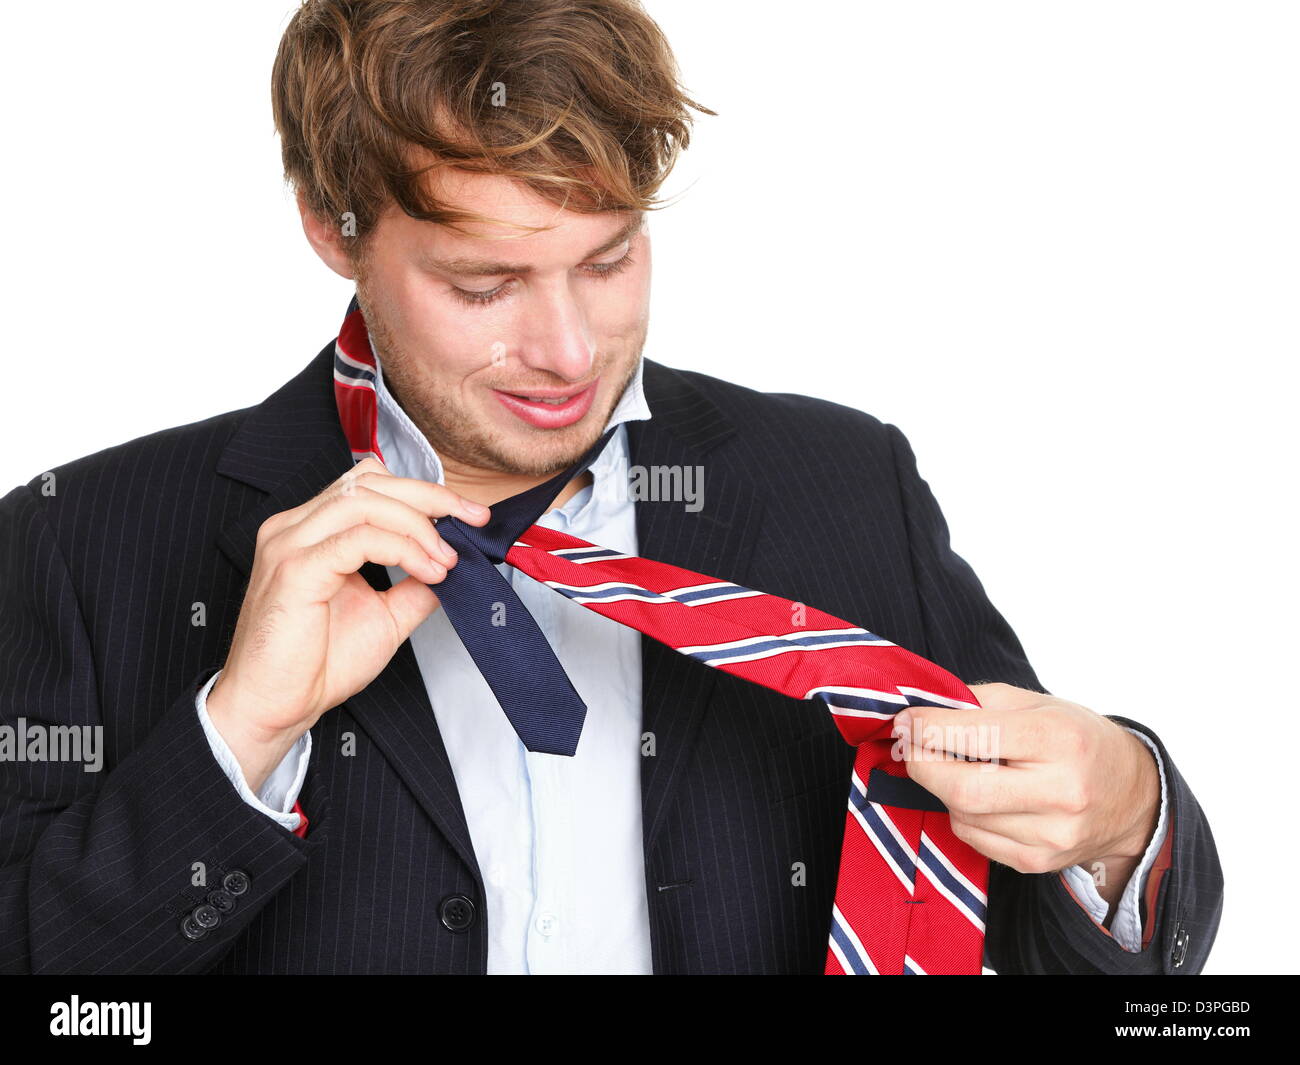 Где завязывают мальчиков. Мужчина в галстуке. Мужчина завязывает галстук. Ослабленный галстук. Подросток в галстуке.